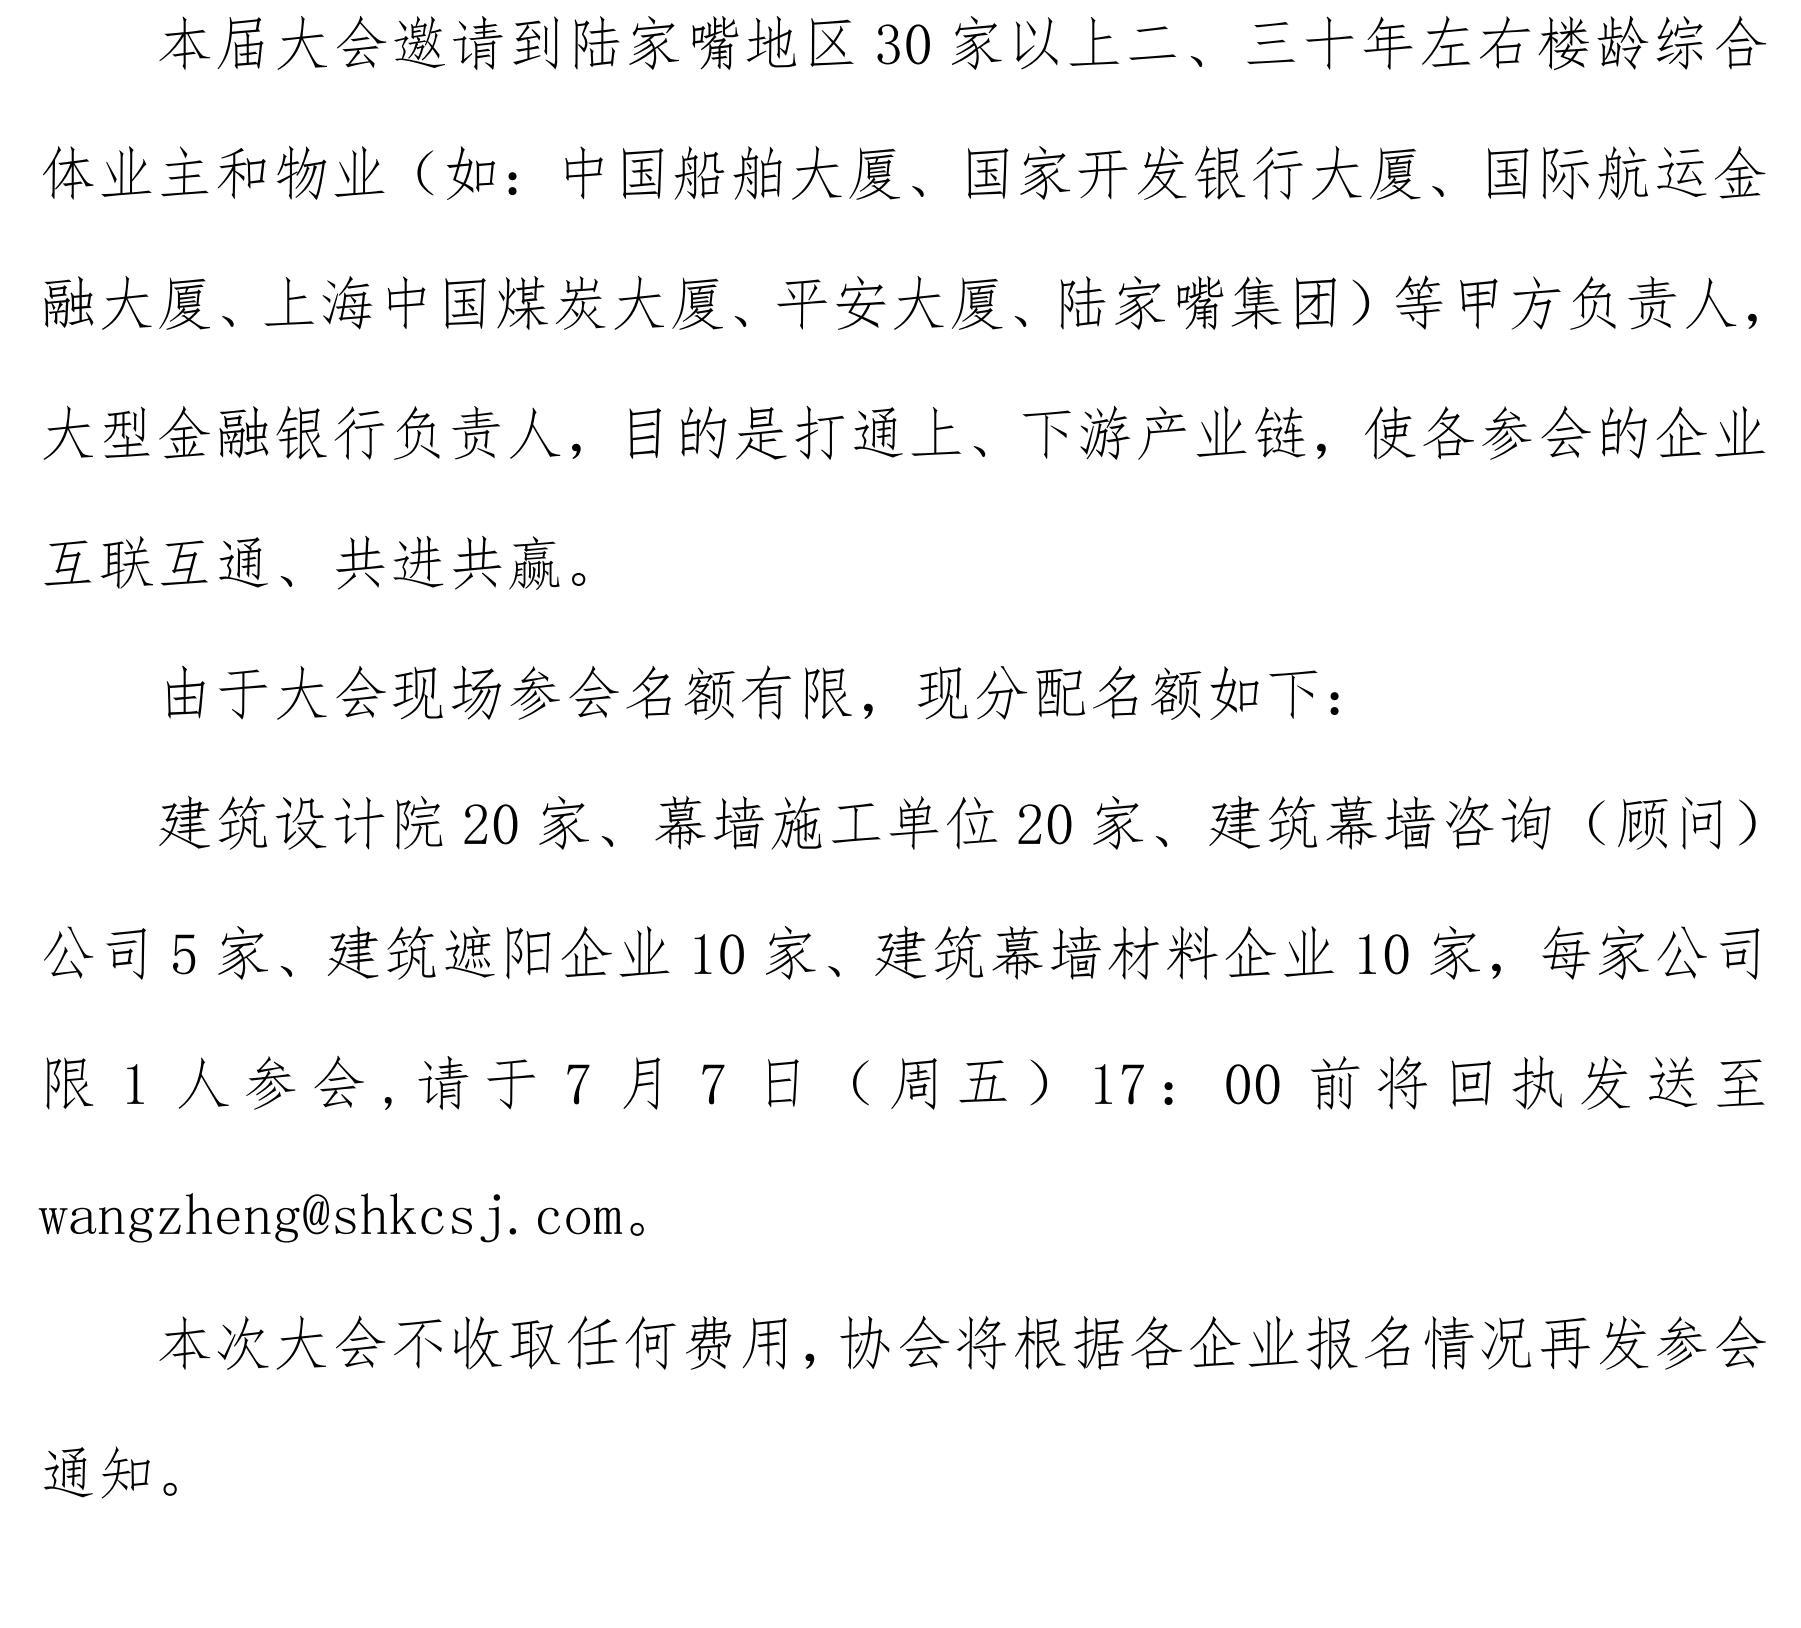 关于举办第一届上海城市更新国际论坛——既有玻璃幕墙安全综合改造高峰论坛_05.jpg